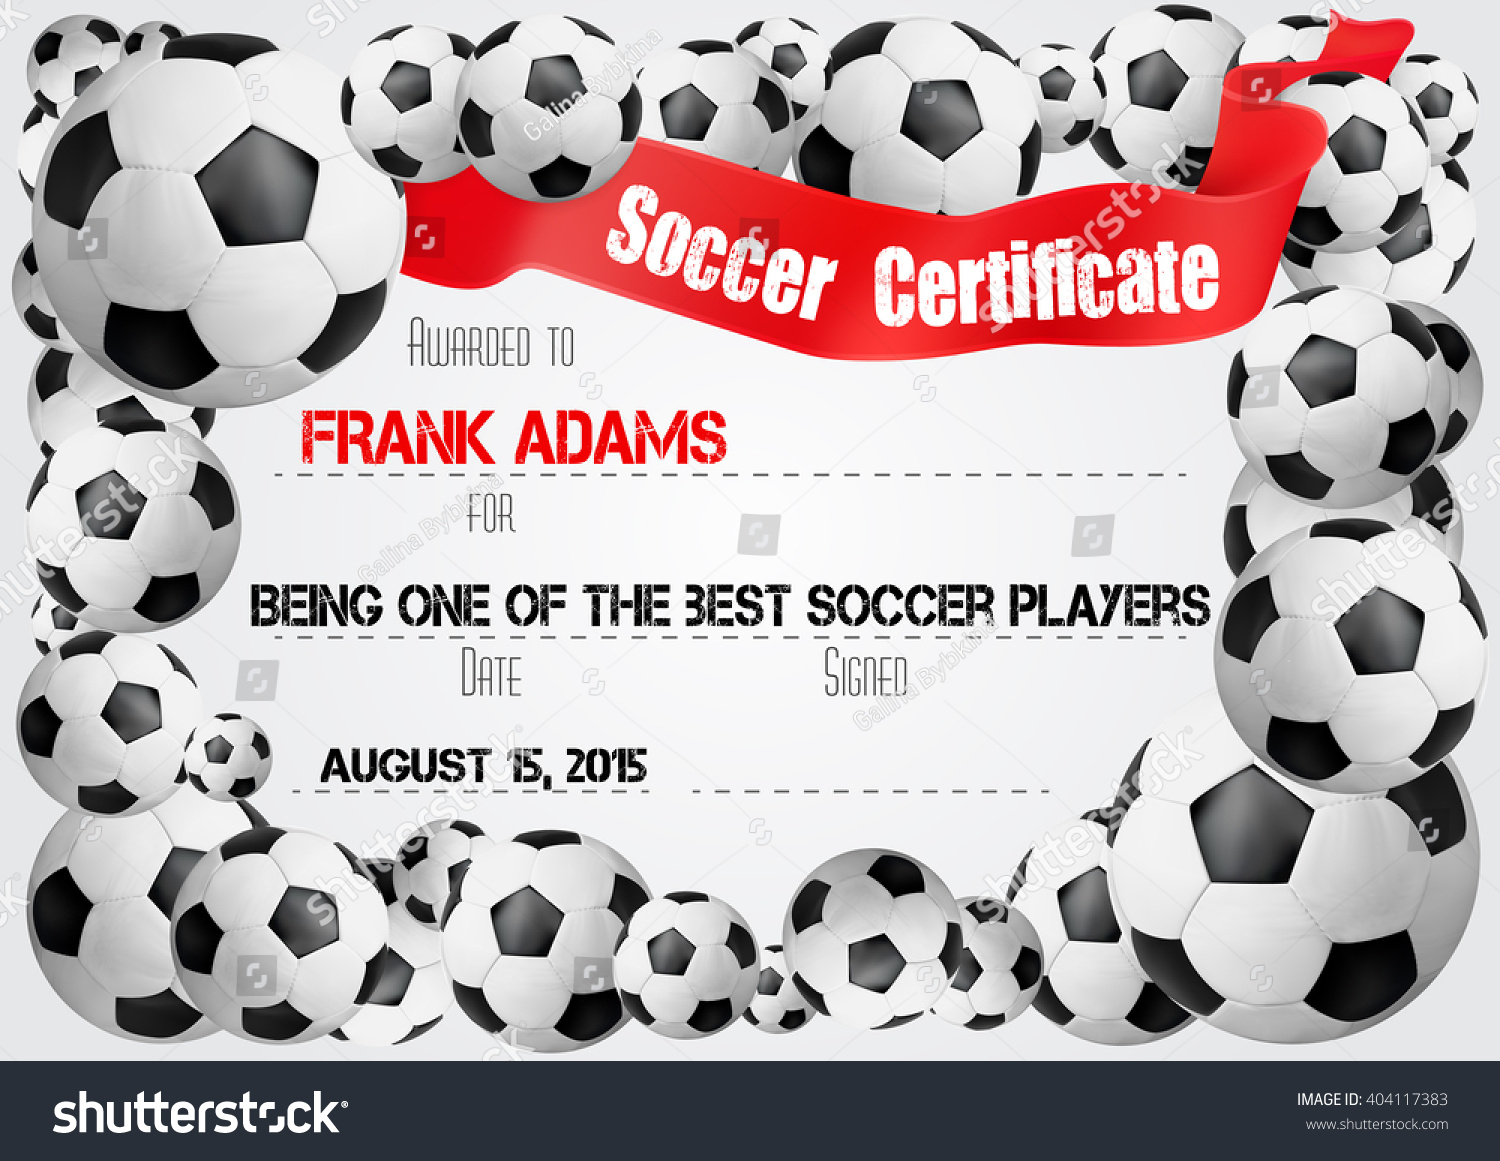 Soccer Certificate Template Football Ball Icons Stock Vector For Soccer Certificate Template Free